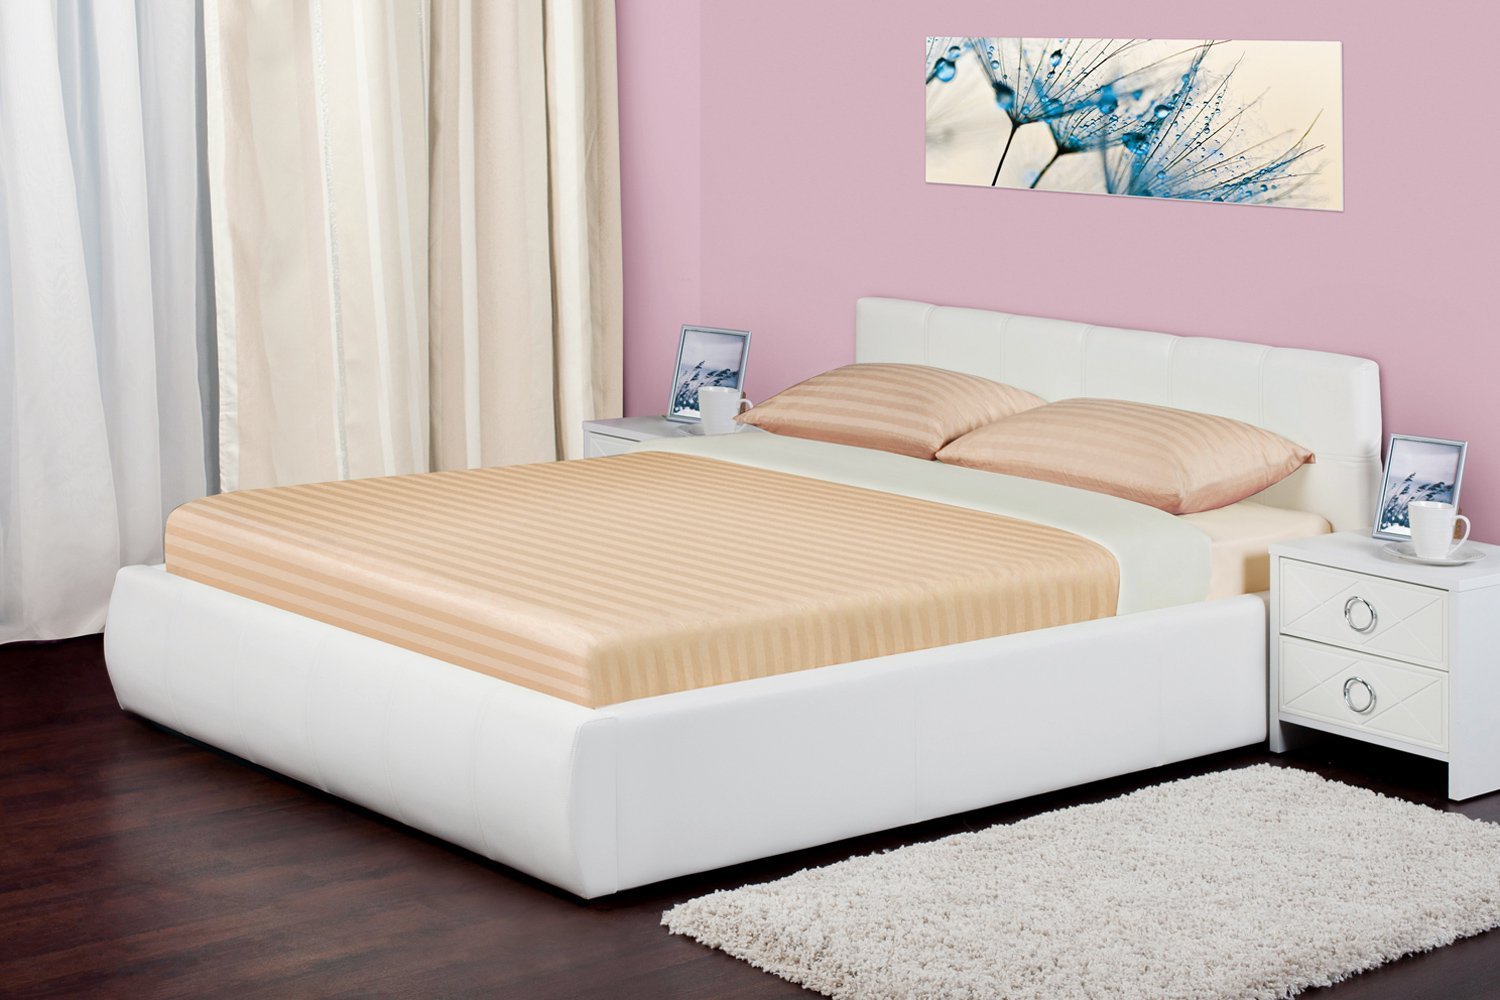 Кровать 160х200 купить спб недорого от производителя. Хофф кровати 160х200. Хофф кровати двуспальные 160х200. Кровать хофф белая 160 200. Кровать двуспальная 160х200 Хоф.